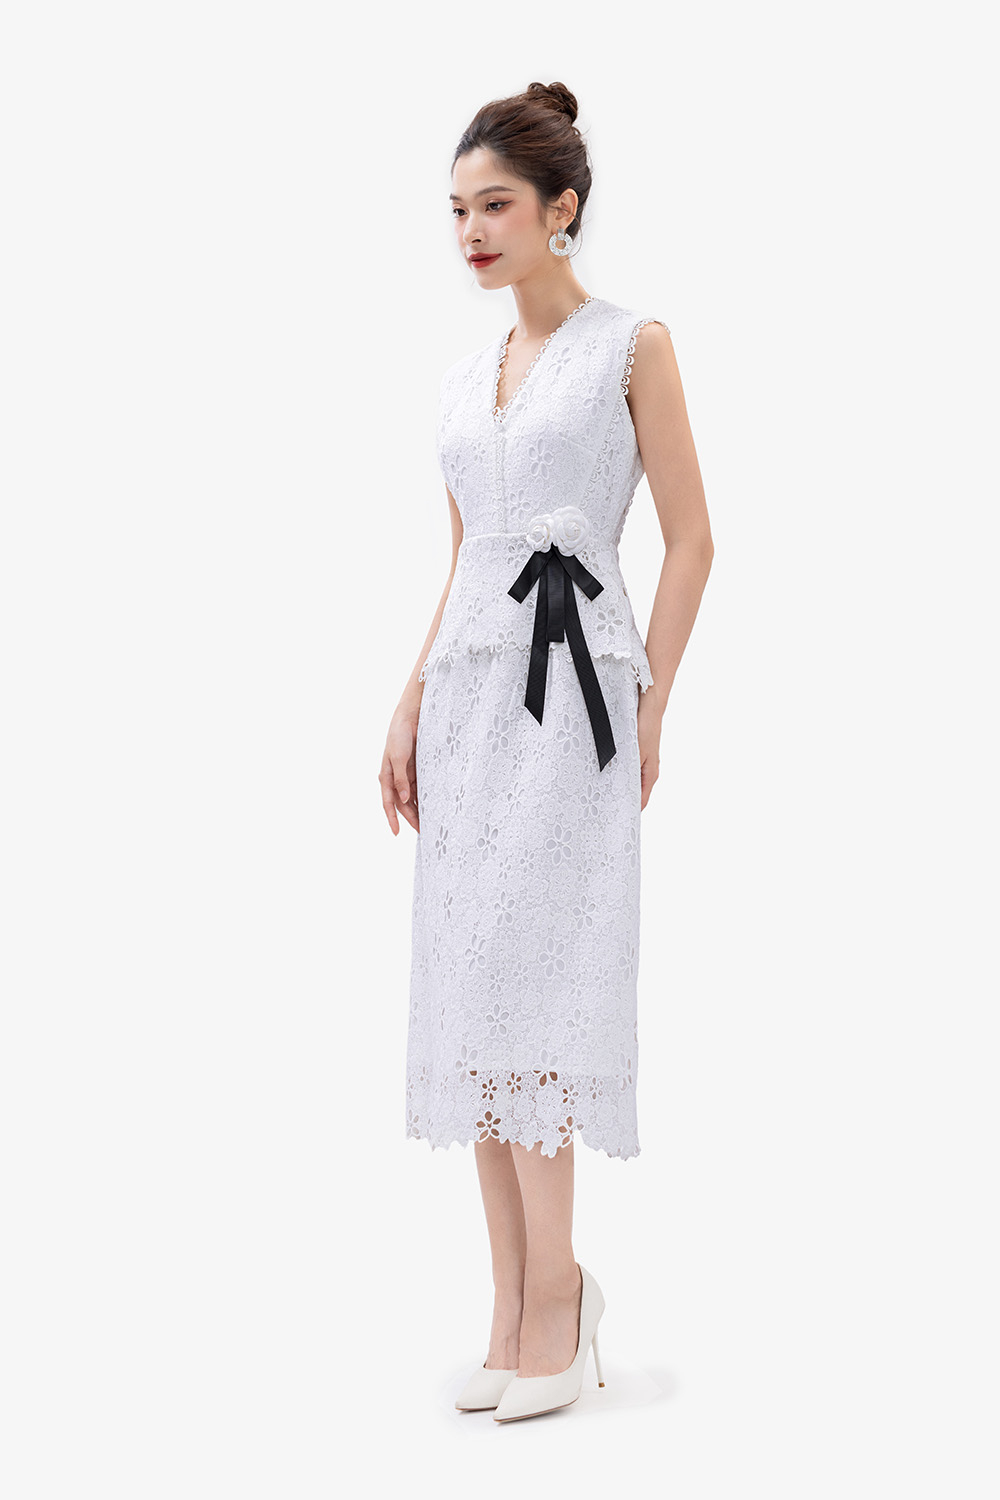 Những mẫu váy màu trắng đẹp “không lối thoát” phù hợp trong mọi hoàn cảnh